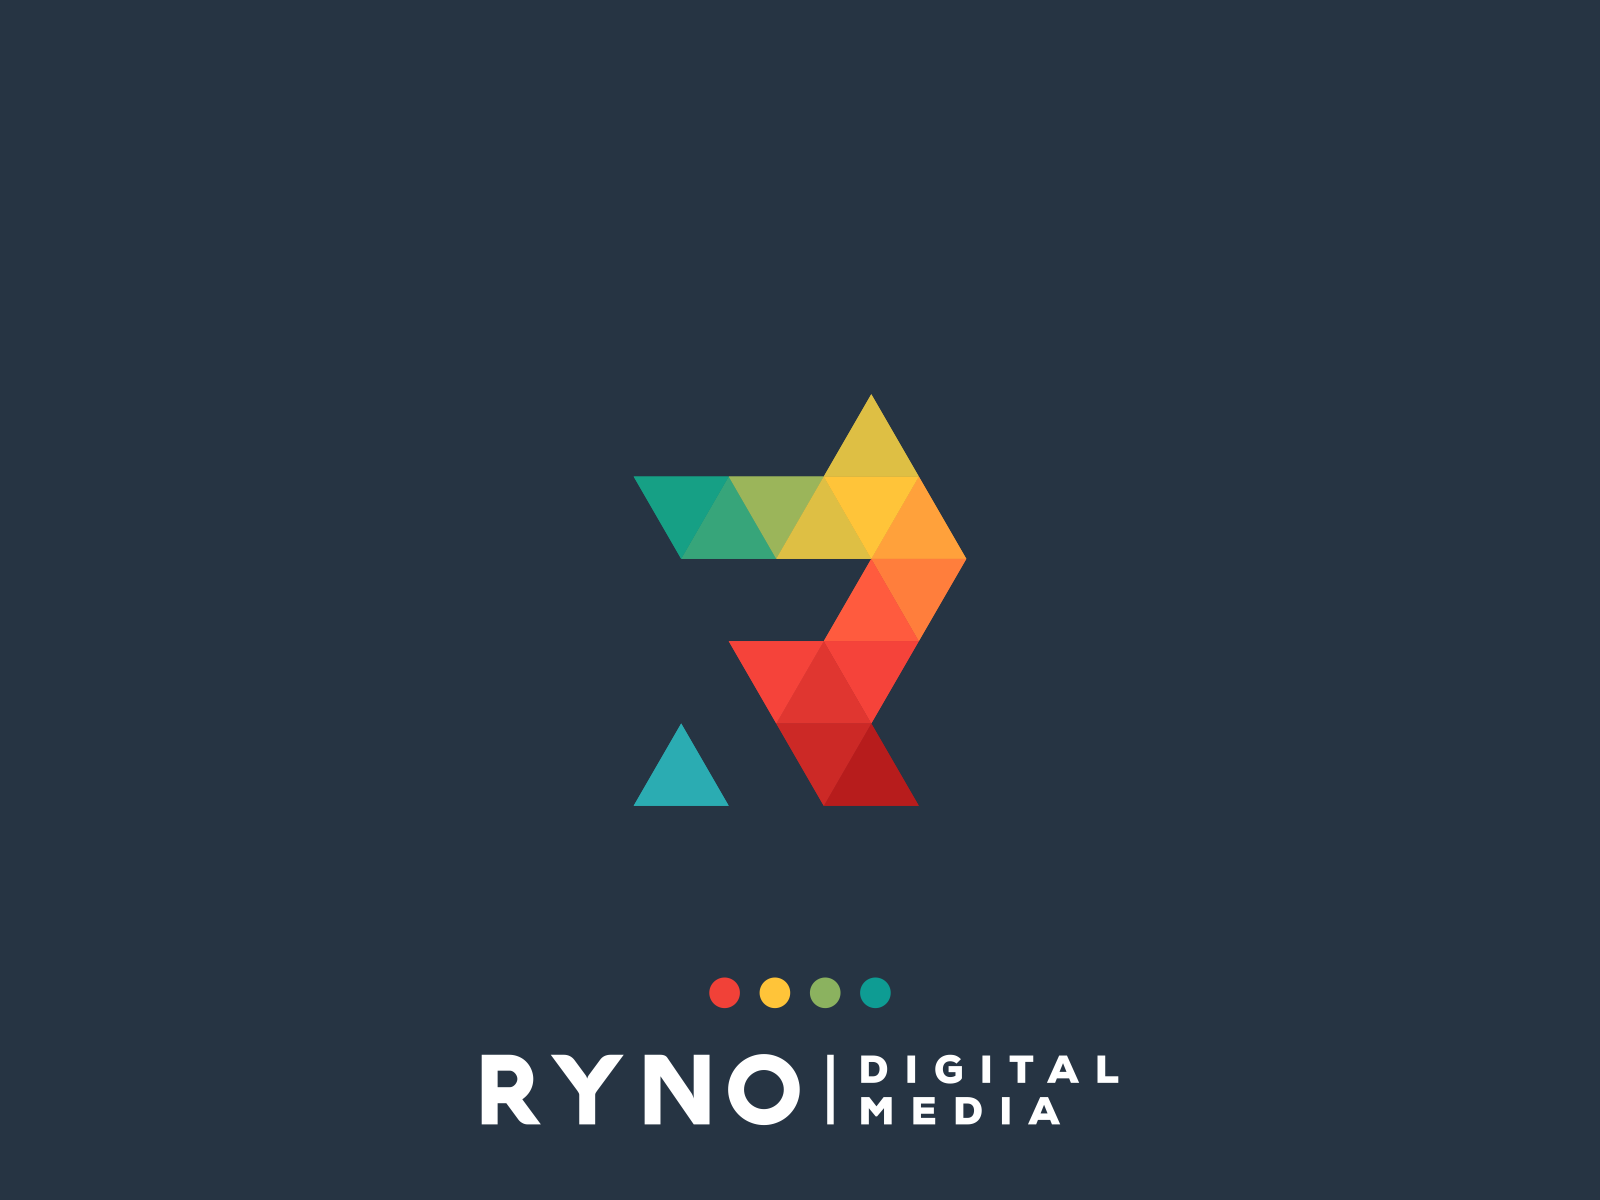 RYNO LOGO by Ogi Latoh on Dribbble